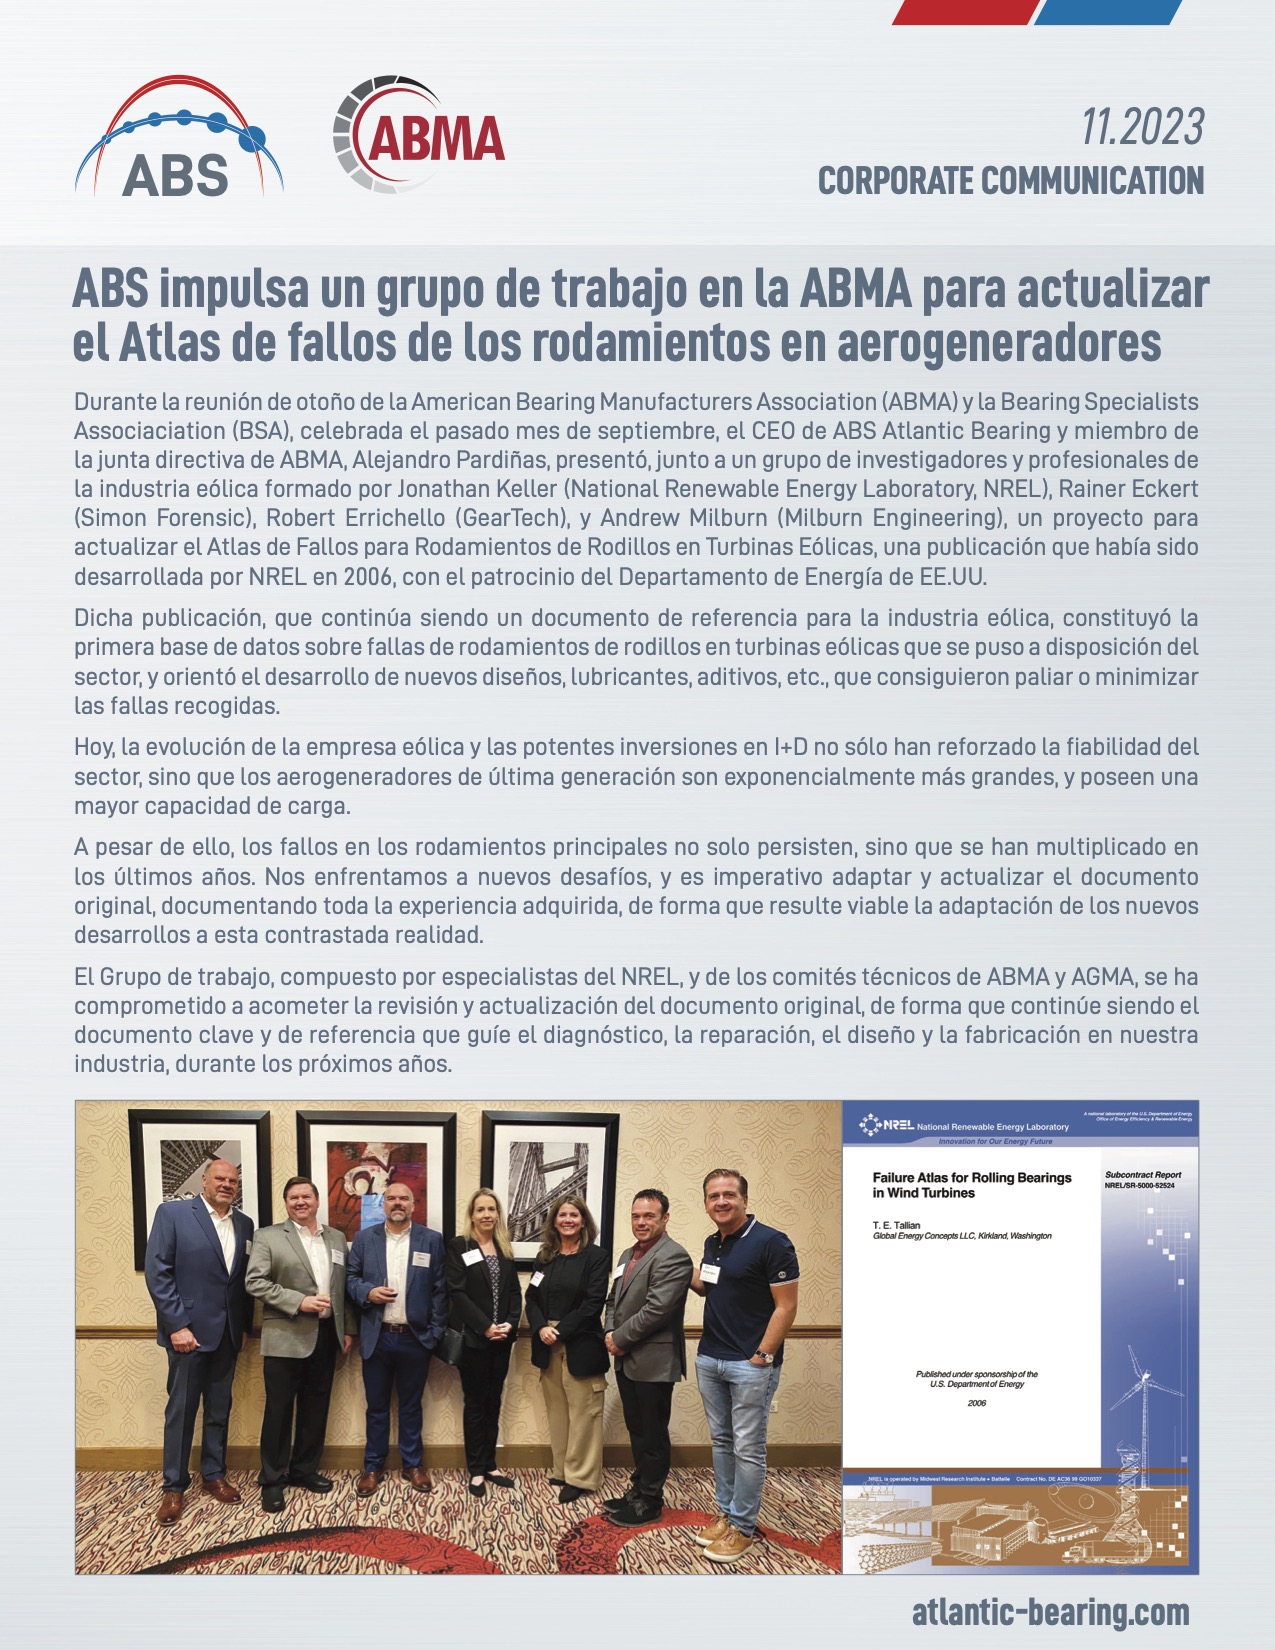 ABS impulsa un grupo de trabajo en la ABMA para actualizar el Atlas de fallos de los rodamientos en aerogeneradores